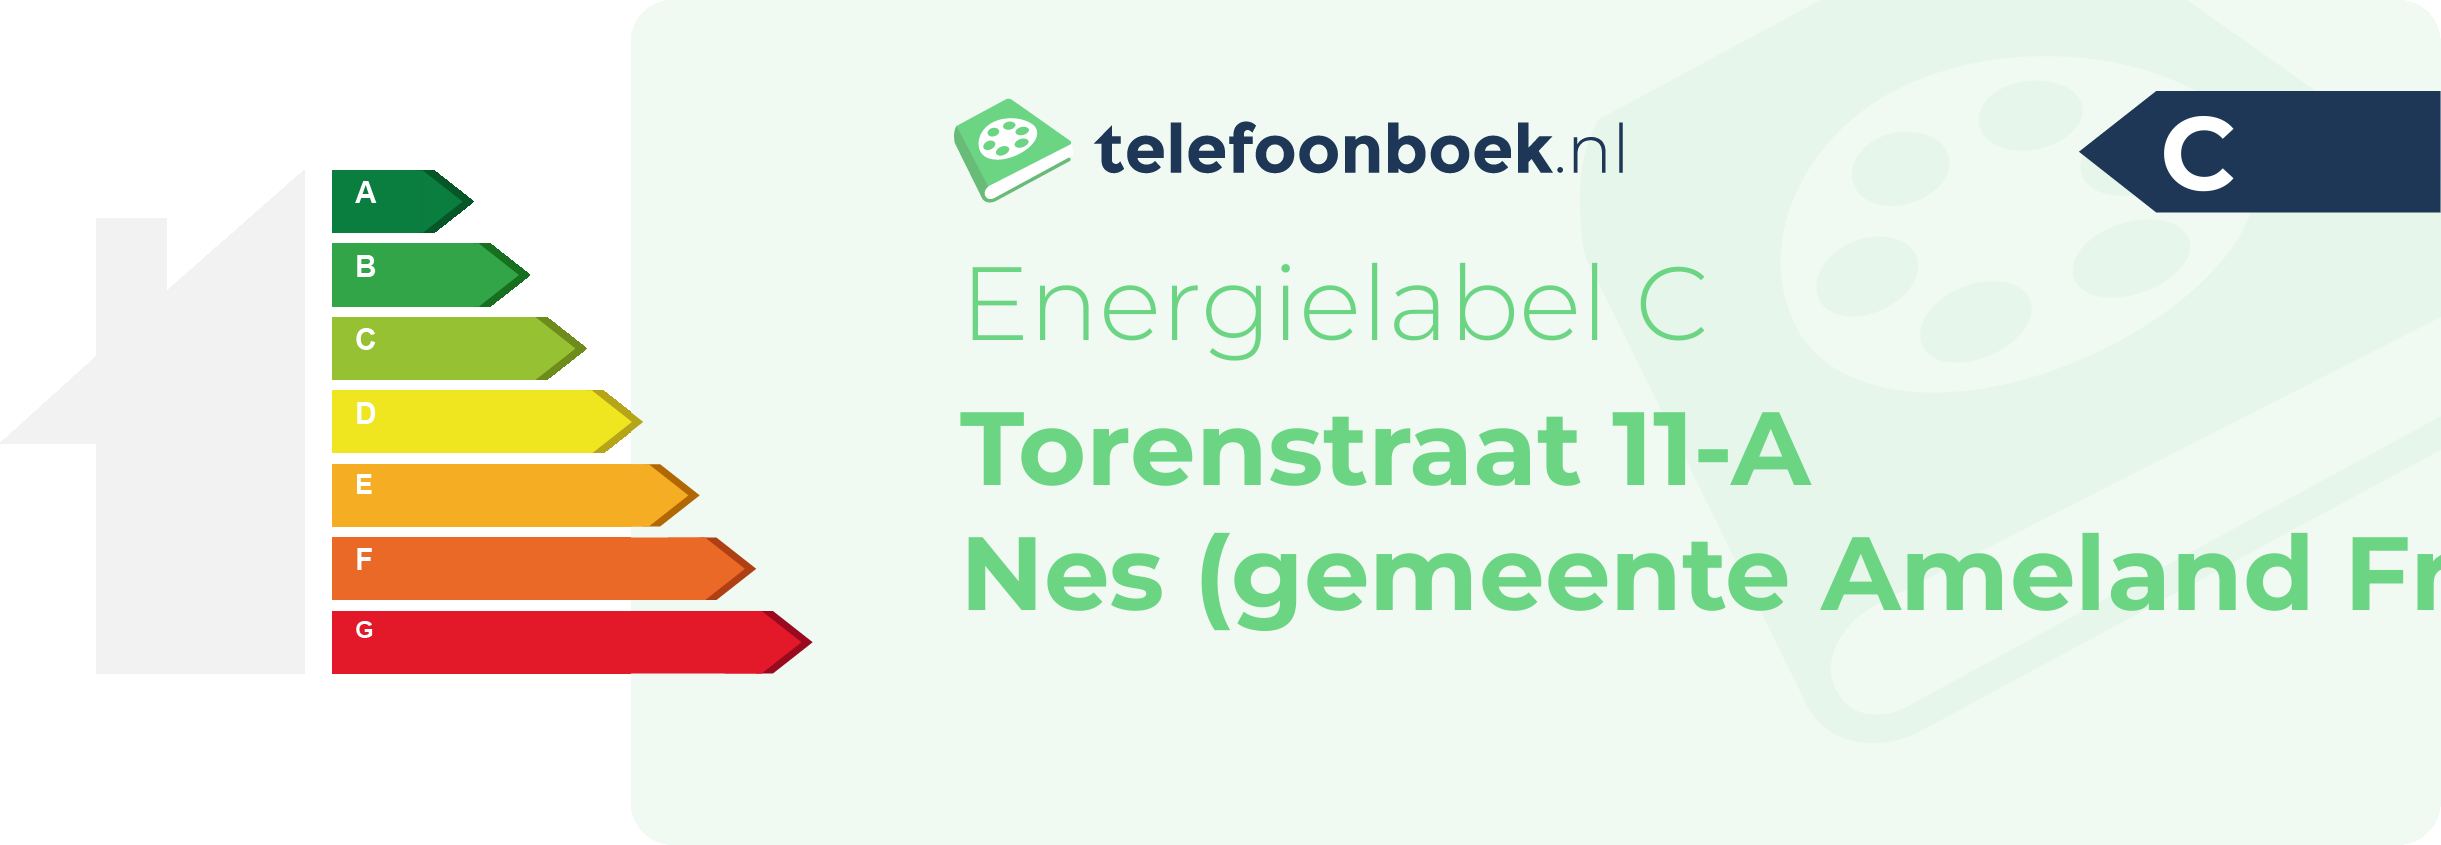 Energielabel Torenstraat 11-A Nes (gemeente Ameland Friesland)